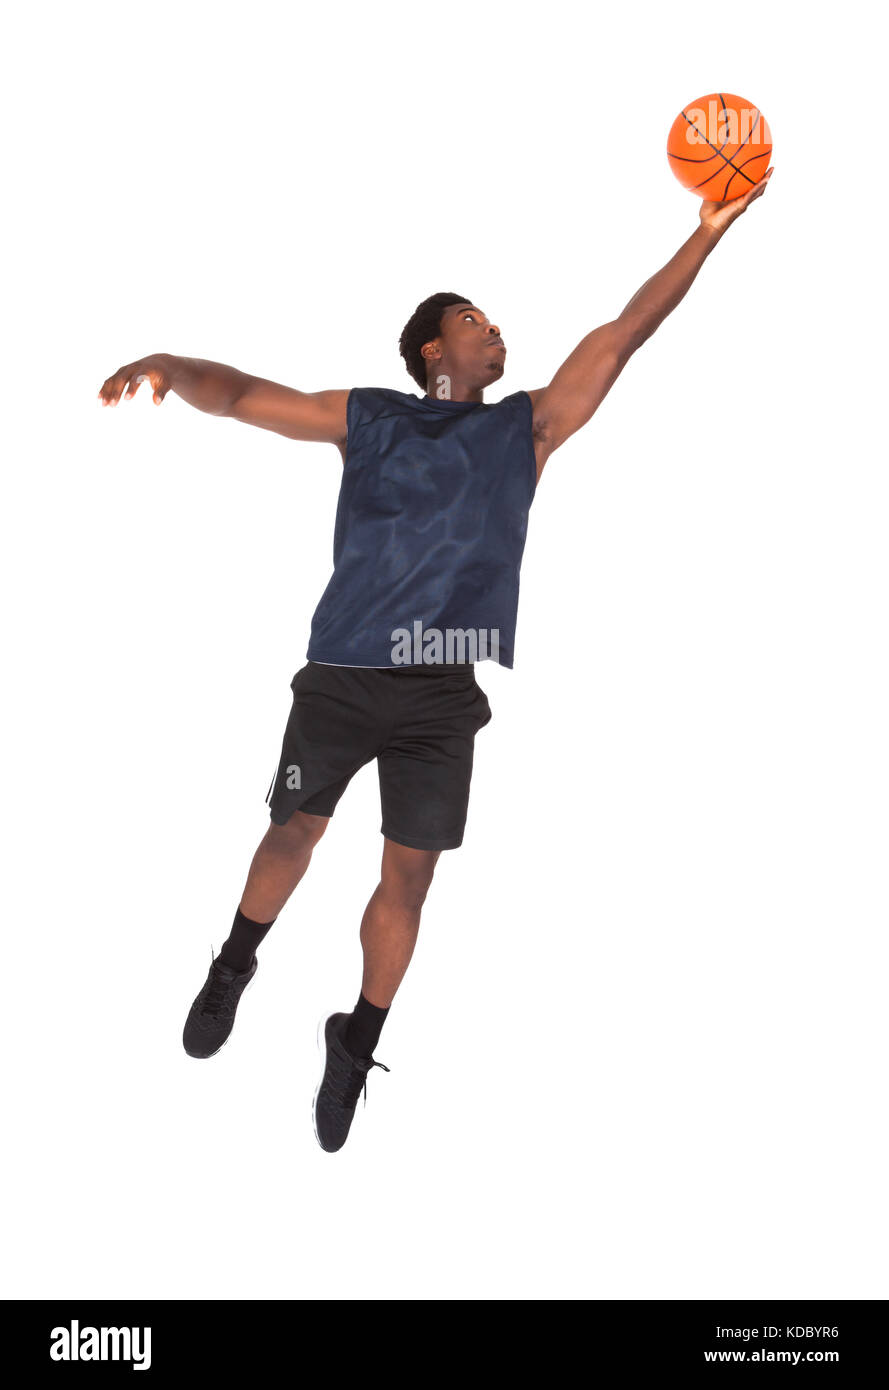 Portrait de jeune homme africain la défense de basket-ball over white background Banque D'Images